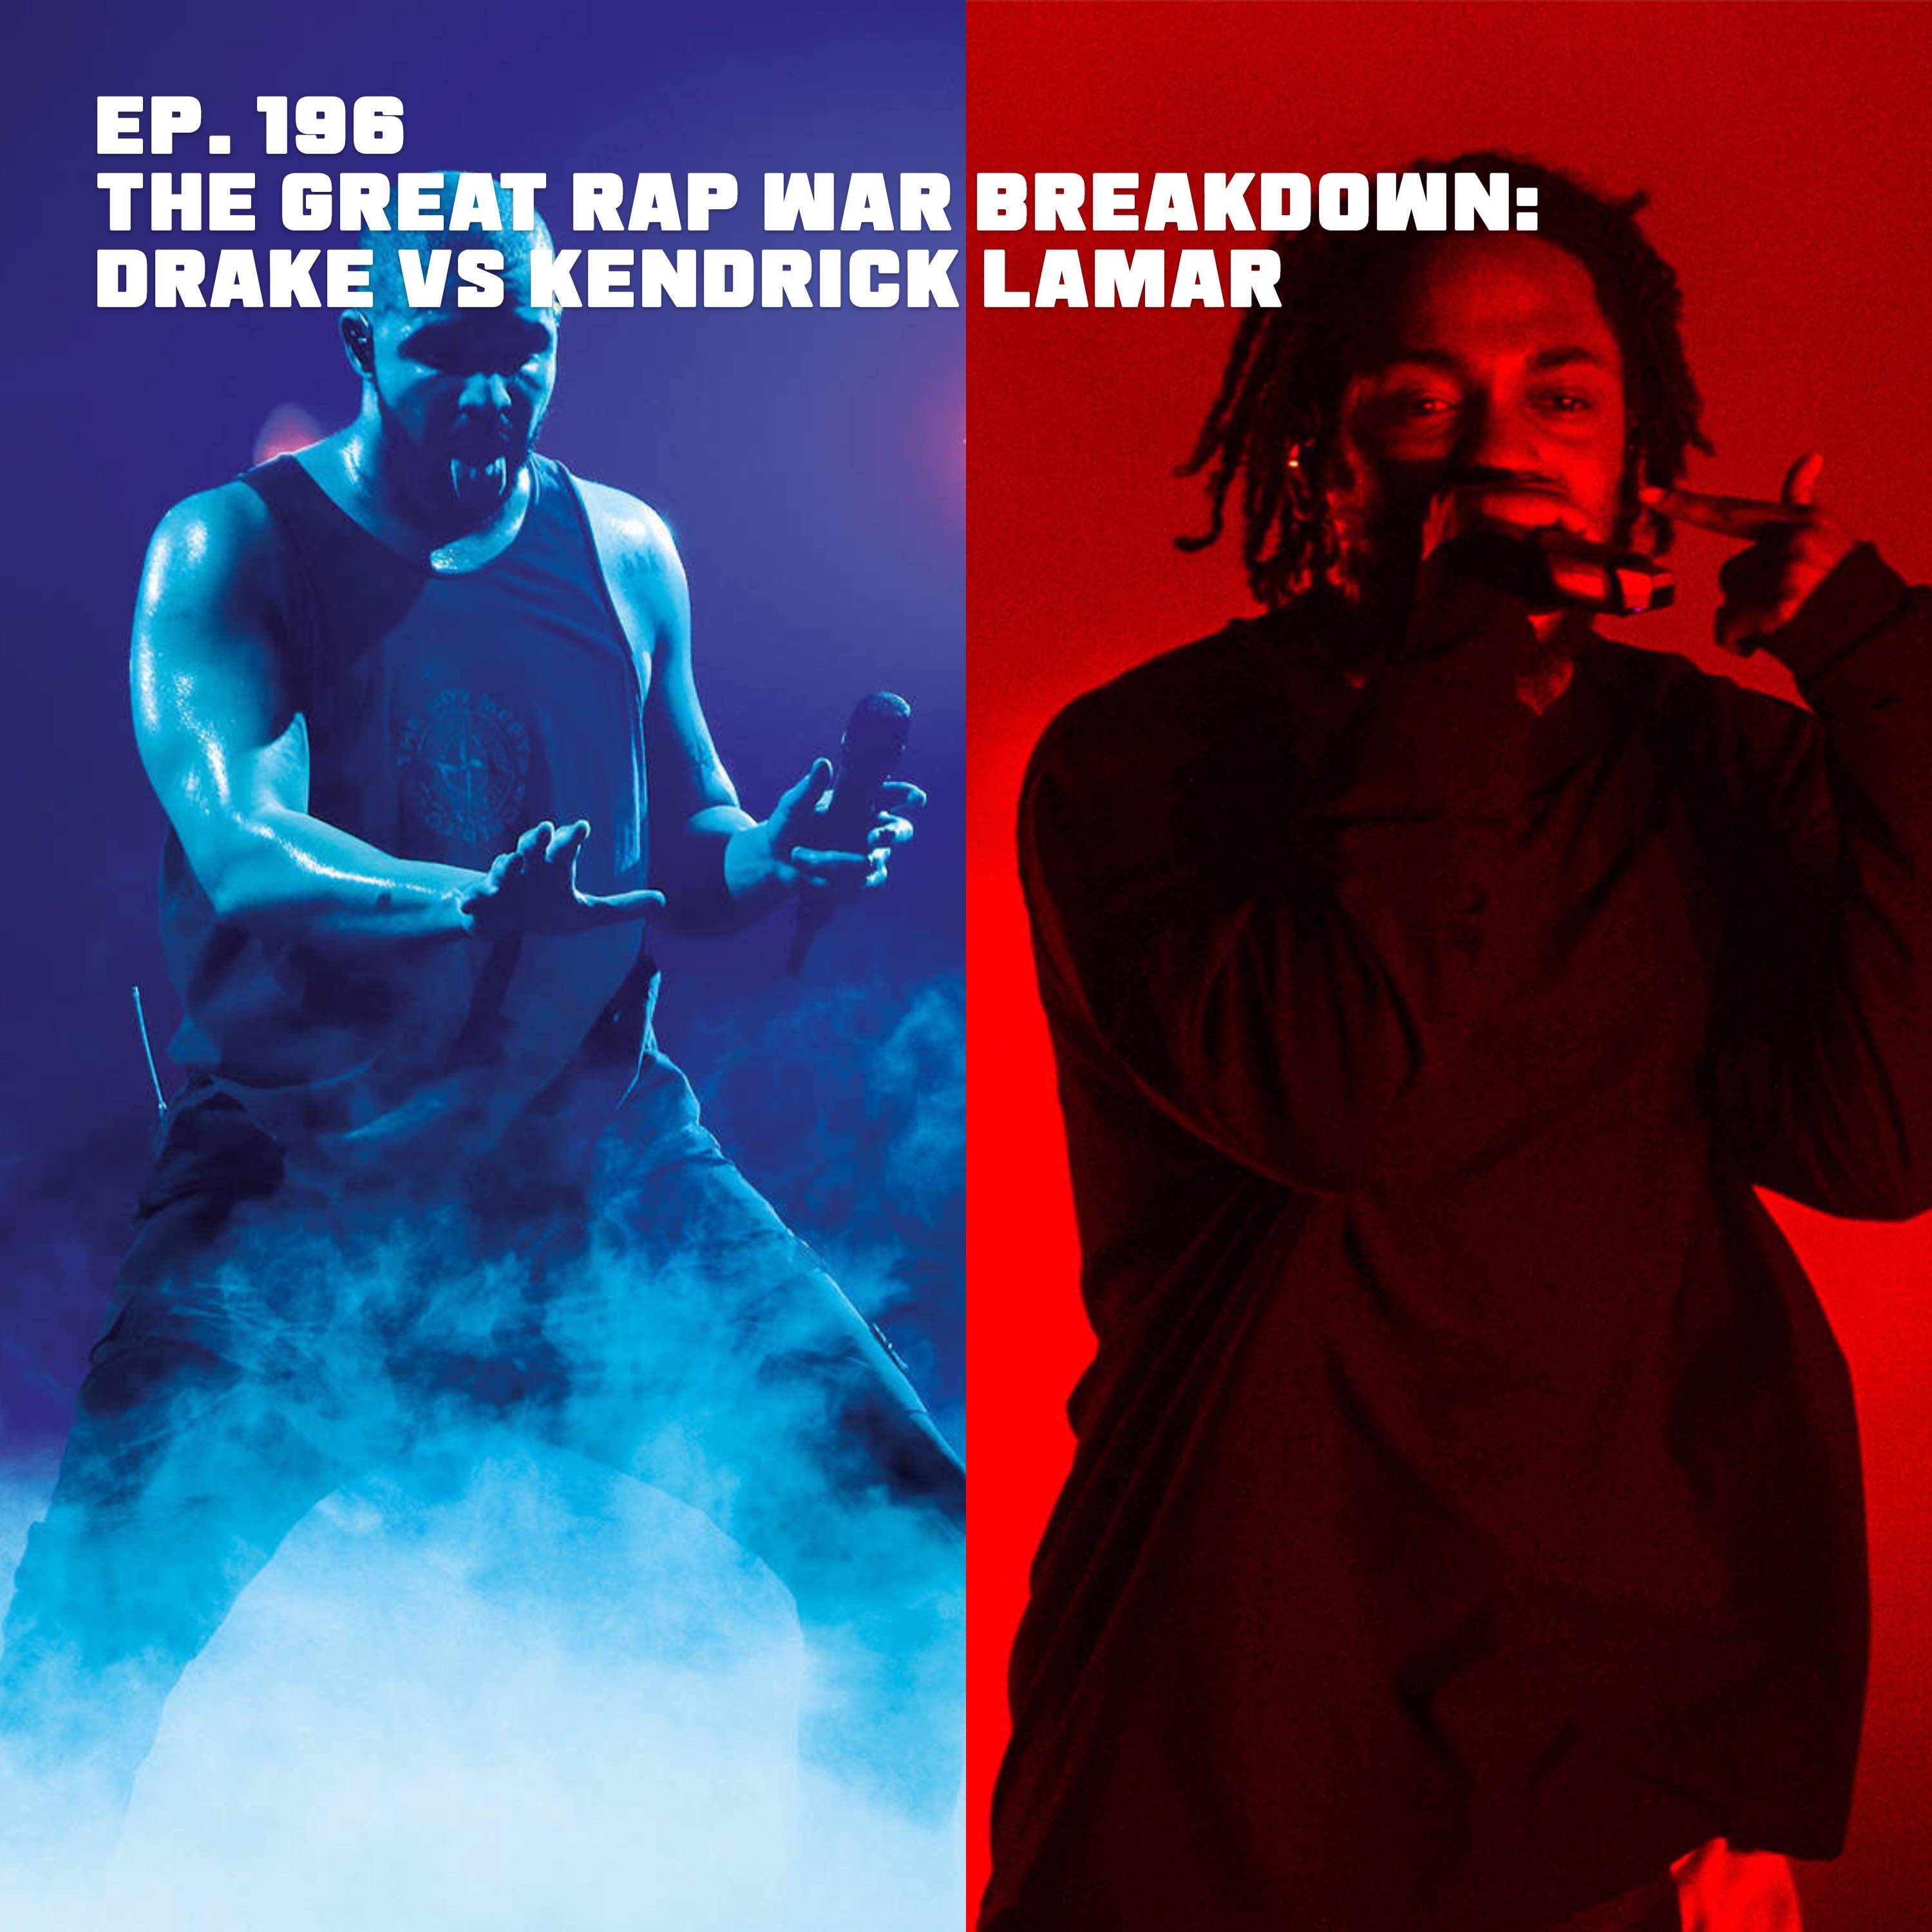 The Great Rap War Breakdown: Drake Vs Kendrick Lamar